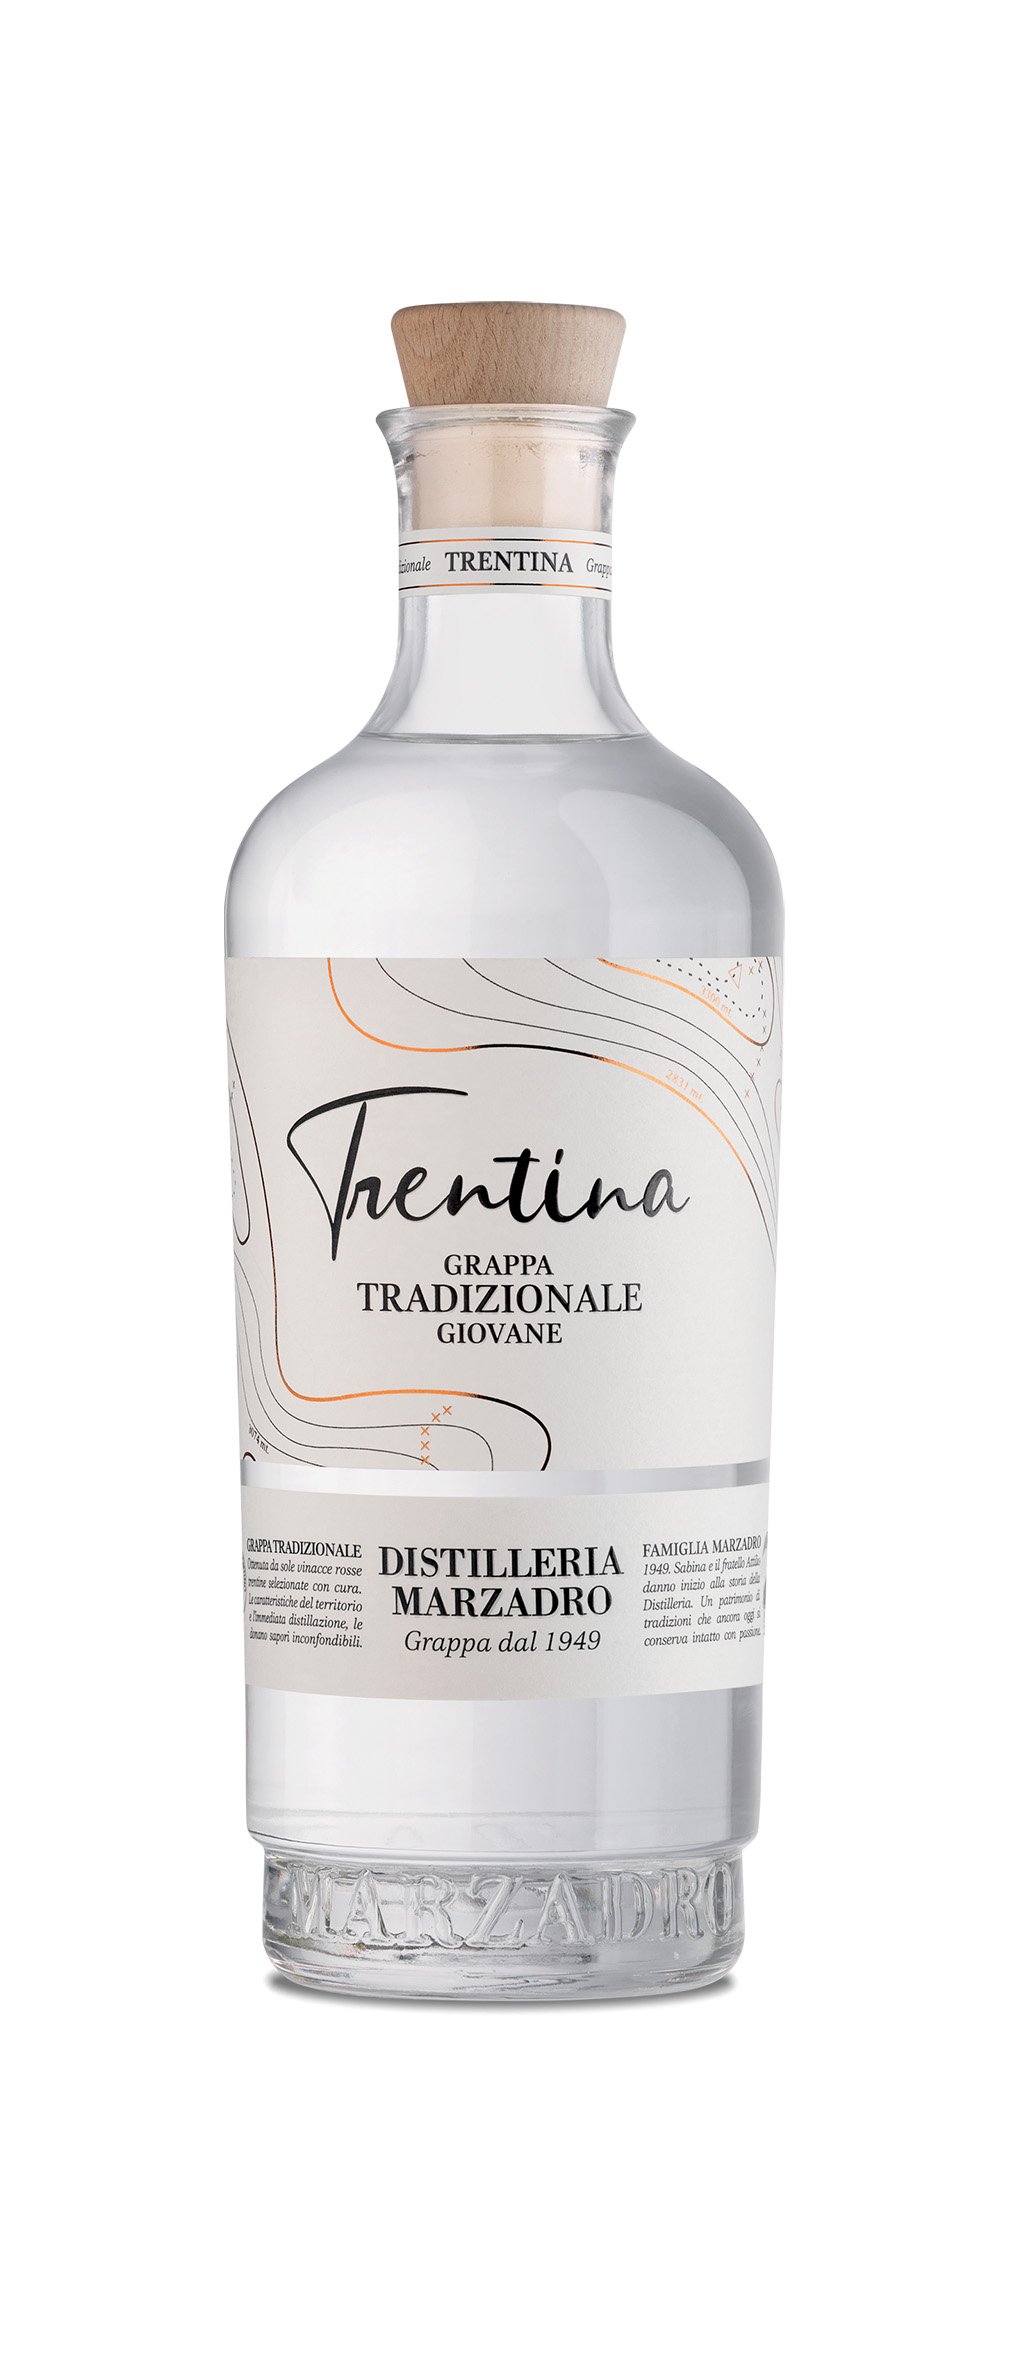 La Trentina - Tradizionale Grappa giovane 0,5l 41% Vol. Marzadro - Vinothek  Munzert Italienische und Südtiroler Weine, Feinkost und mehr